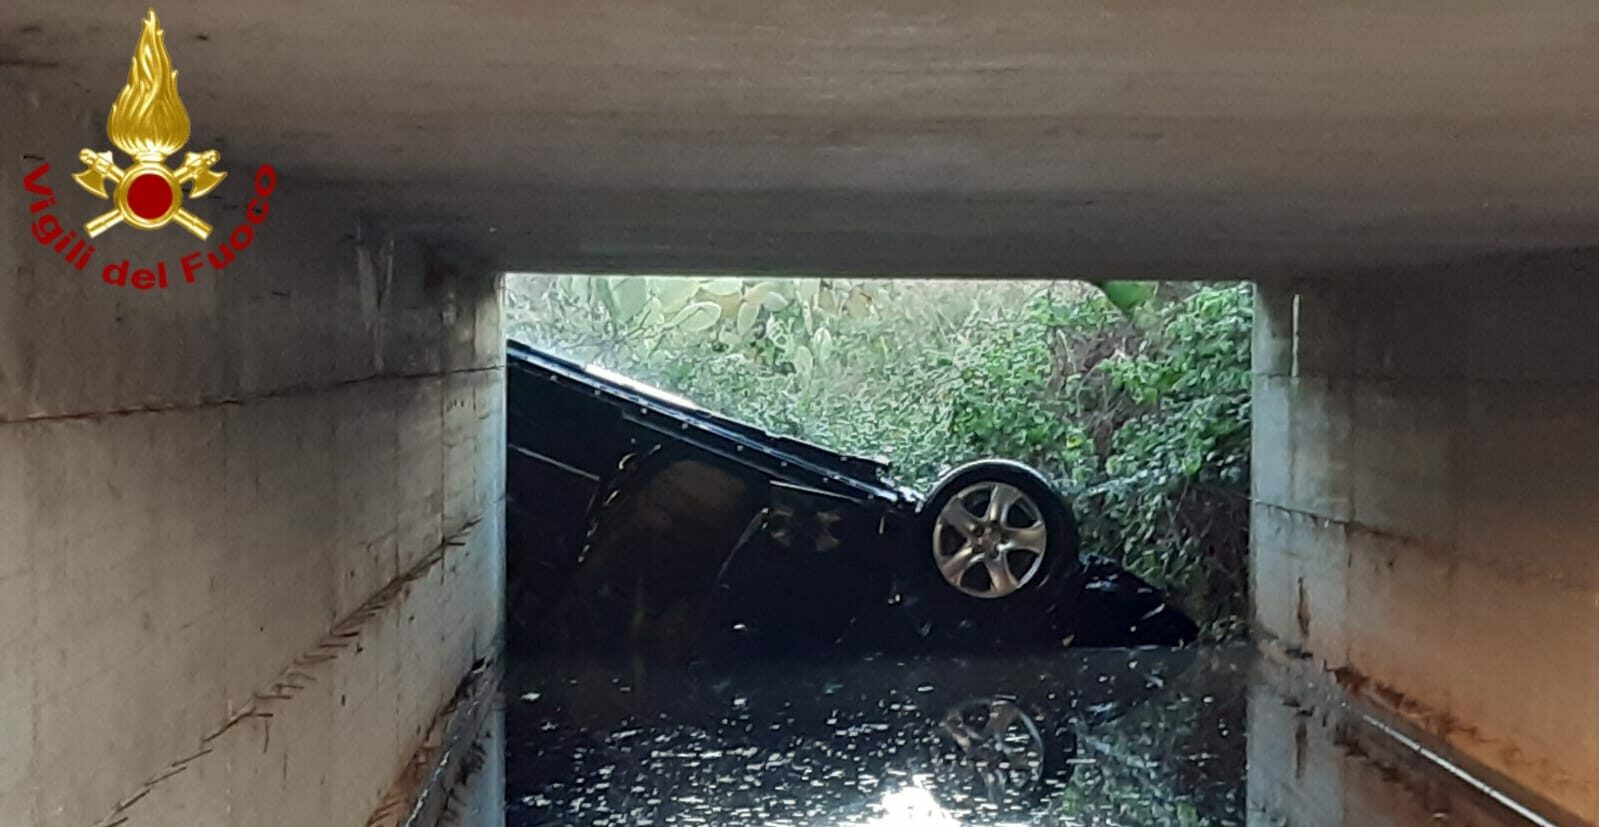 Tragedia sfiorata sulla 106: auto finisce nel canale di bonifica, due persone che stavano annegando salvate dai Vigili del fuoco